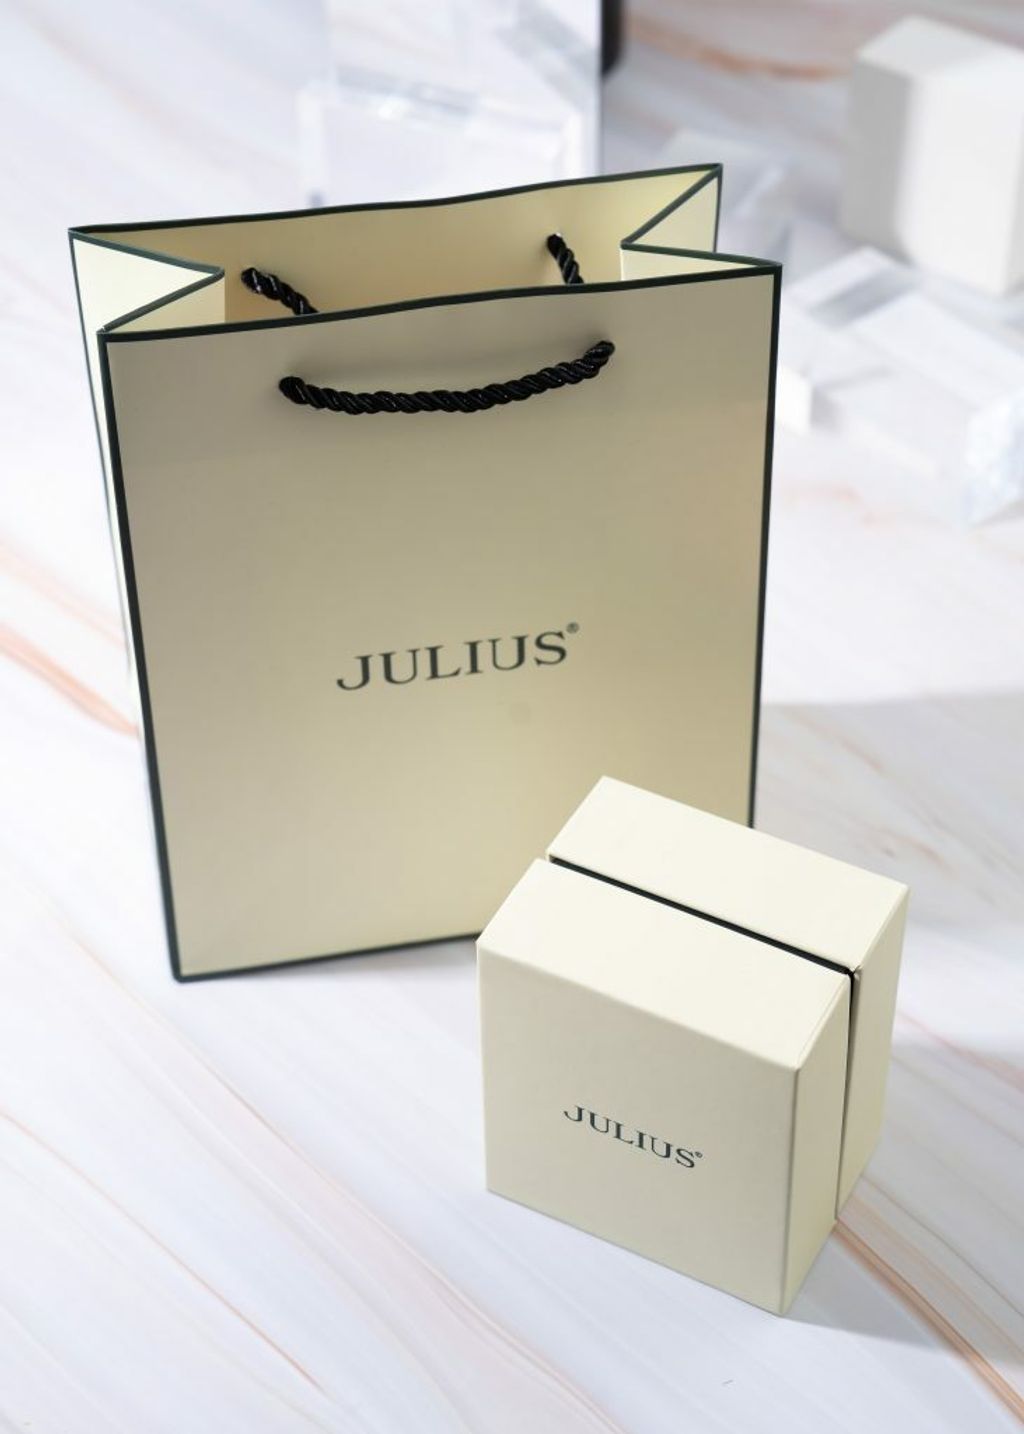 BOX-JULIUS-2-min-731x1024